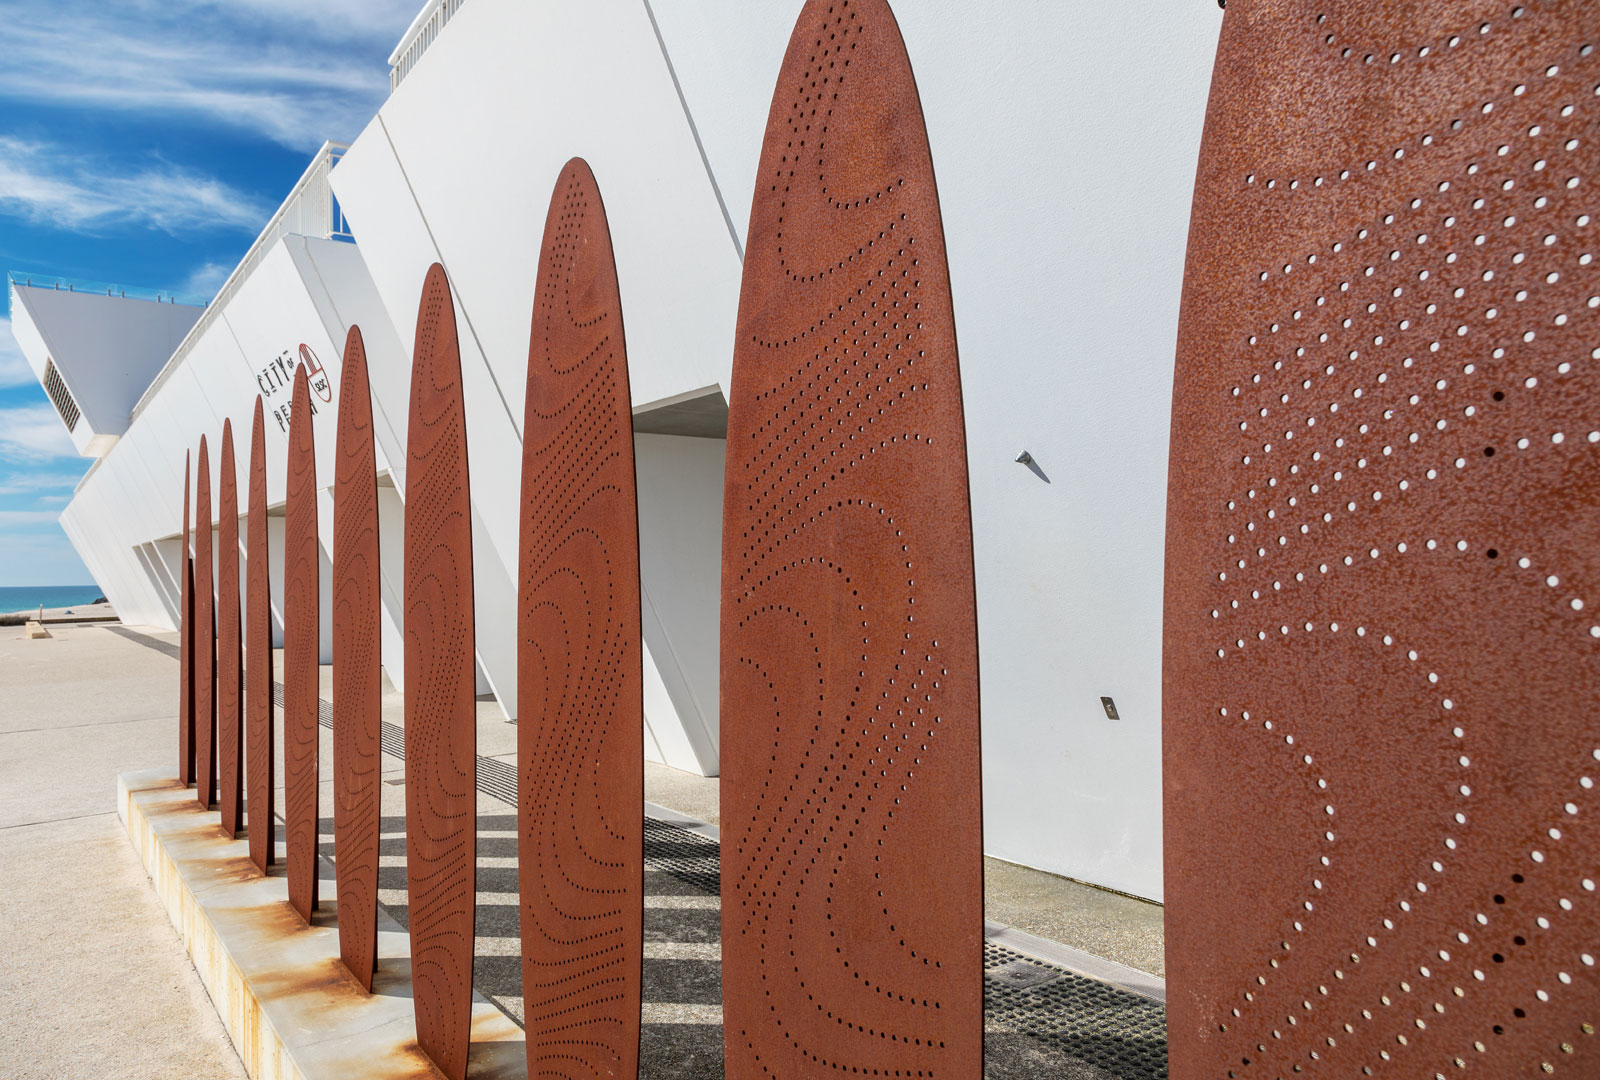 Surf Board Art Sculpture